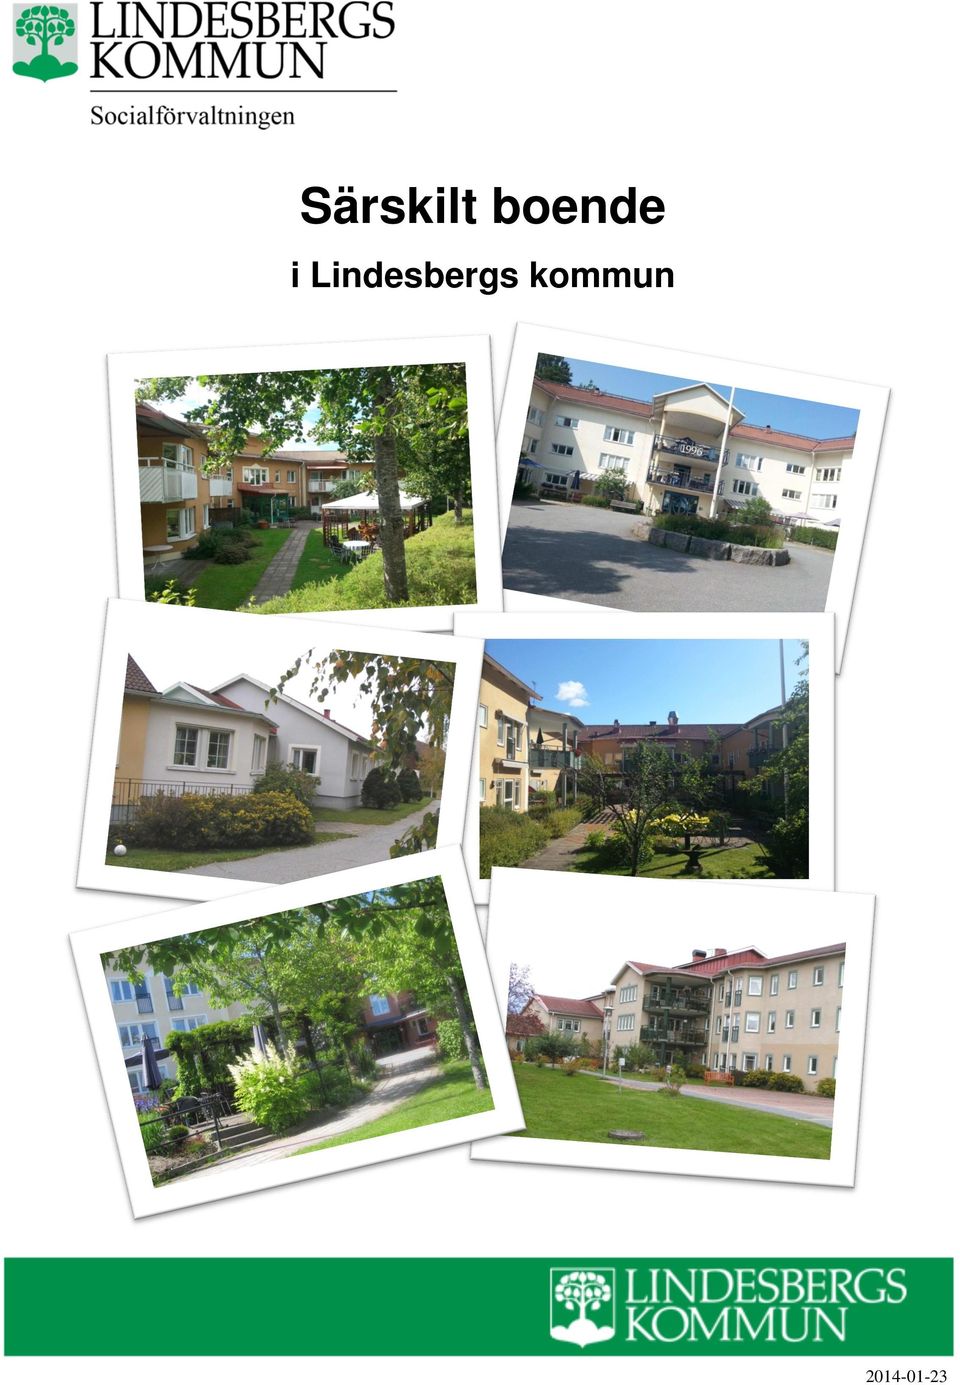 Lindesbergs